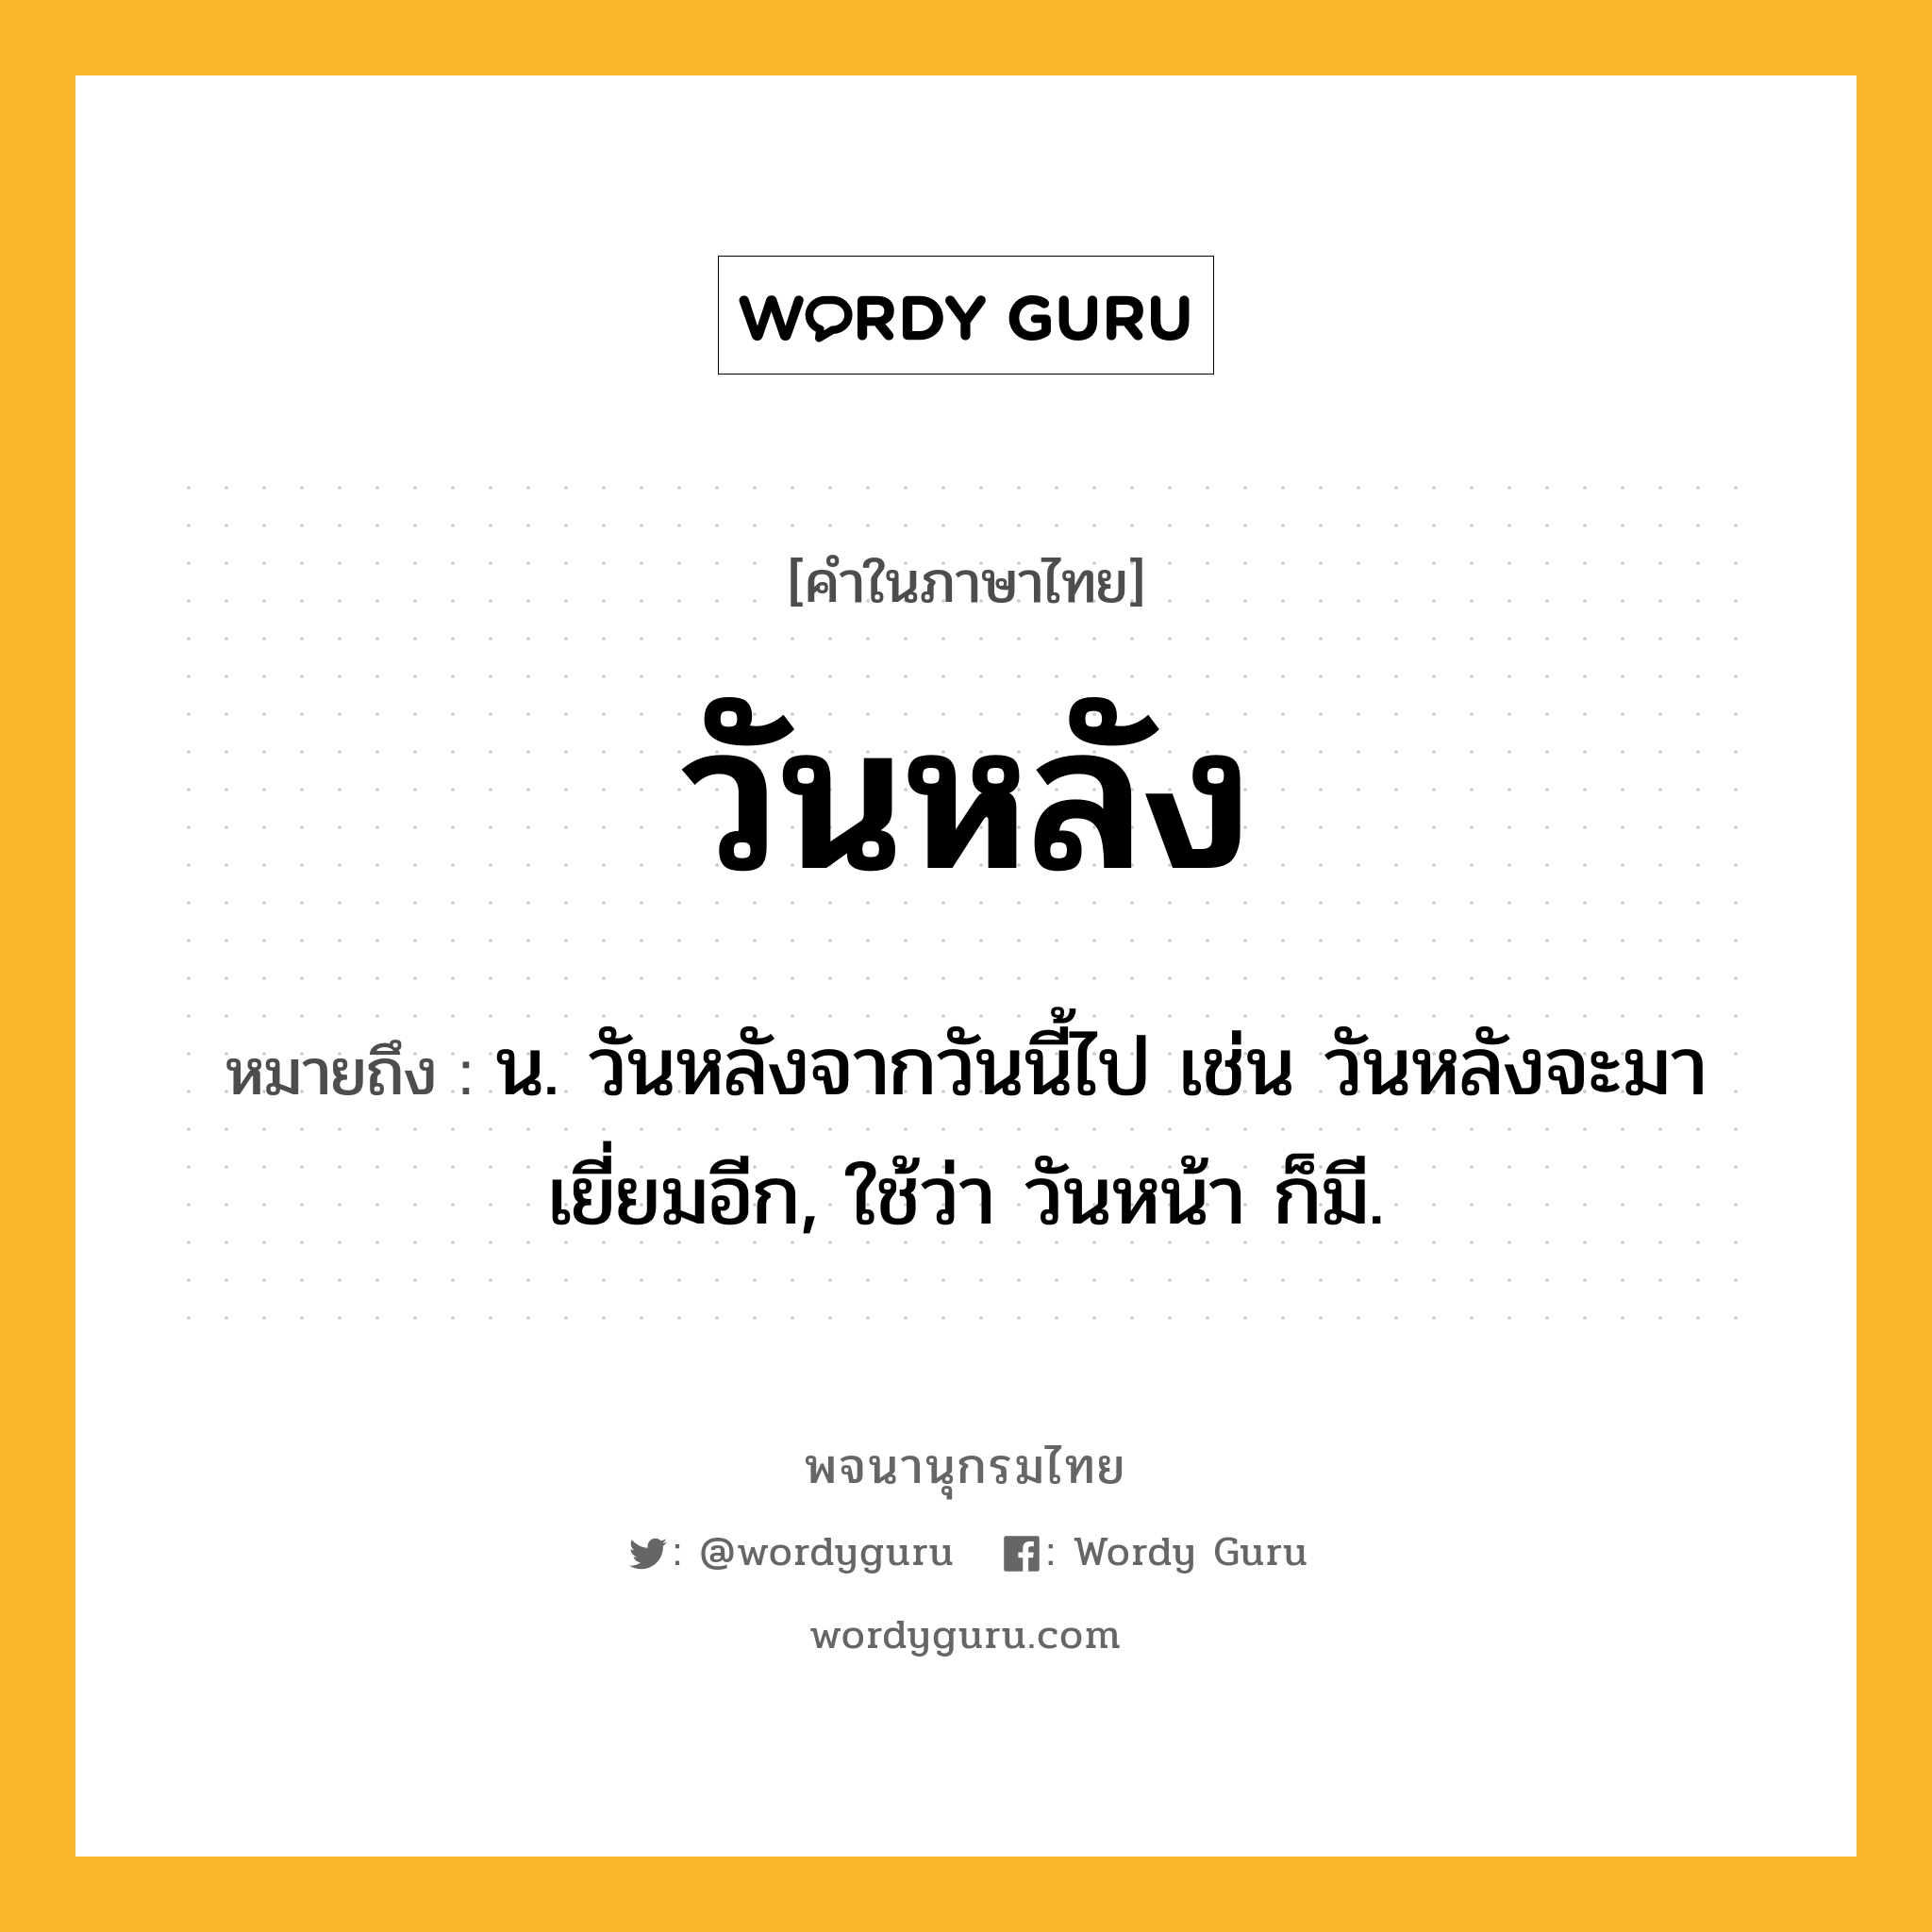 วันหลัง ความหมาย หมายถึงอะไร?, คำในภาษาไทย วันหลัง หมายถึง น. วันหลังจากวันนี้ไป เช่น วันหลังจะมาเยี่ยมอีก, ใช้ว่า วันหน้า ก็มี.